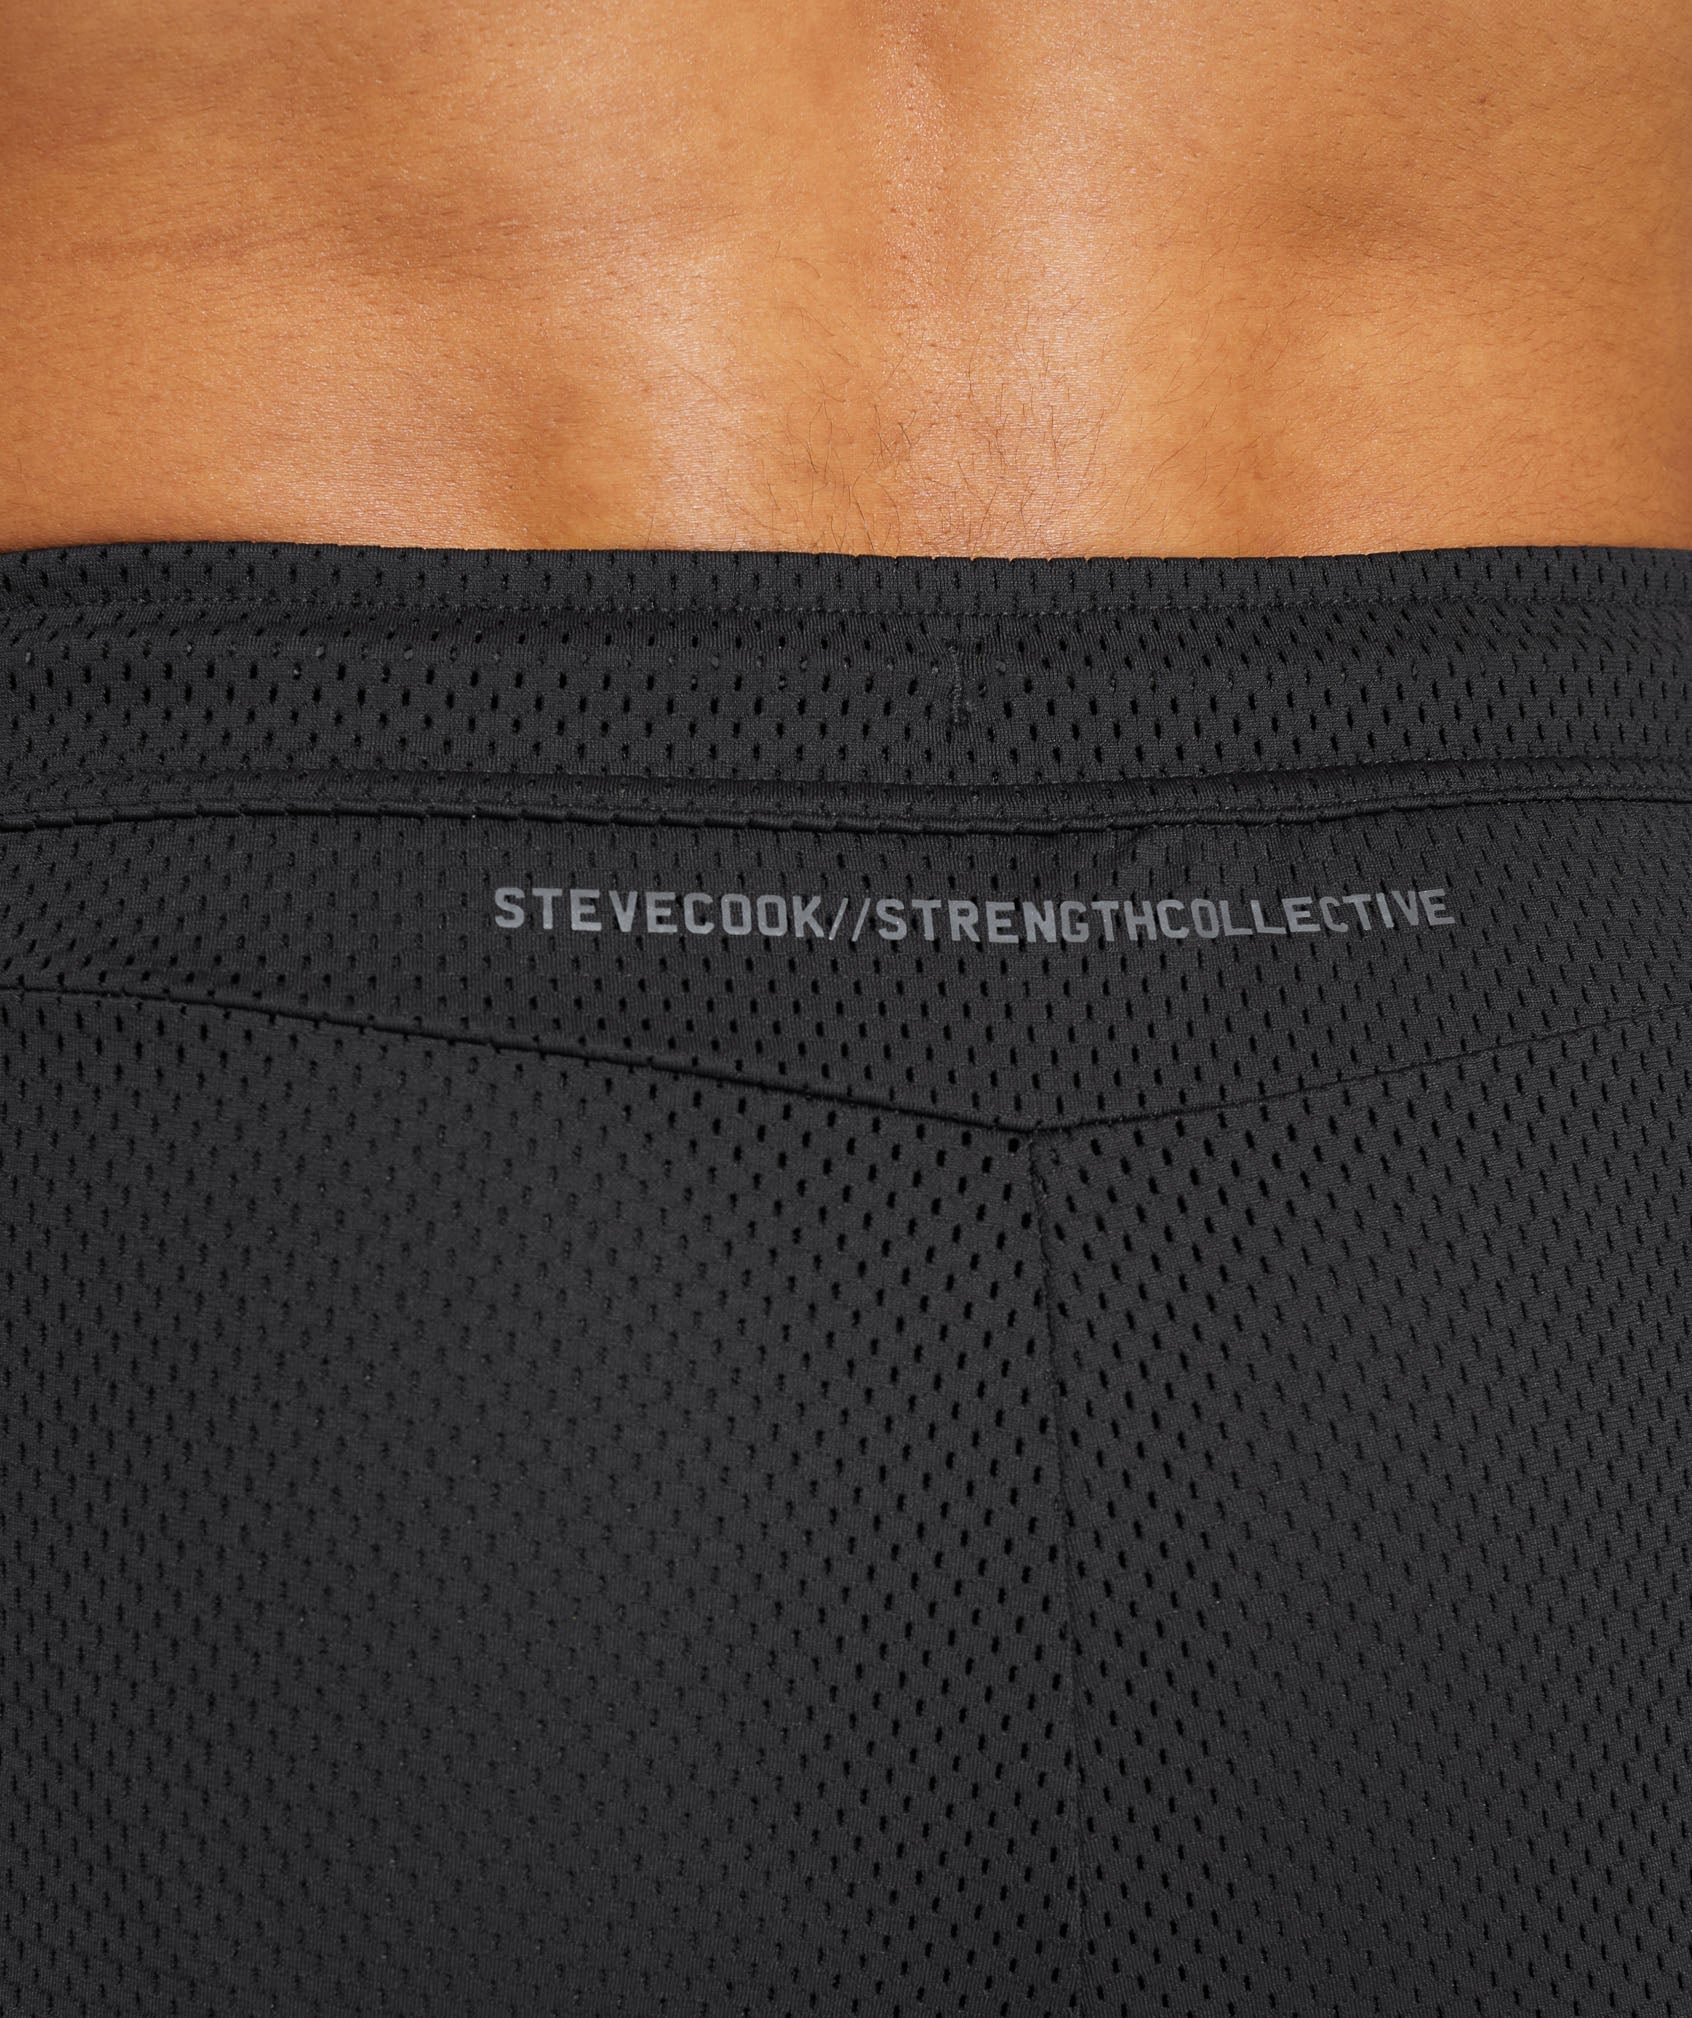 Gymshark//Steve Cook Mesh Shorts